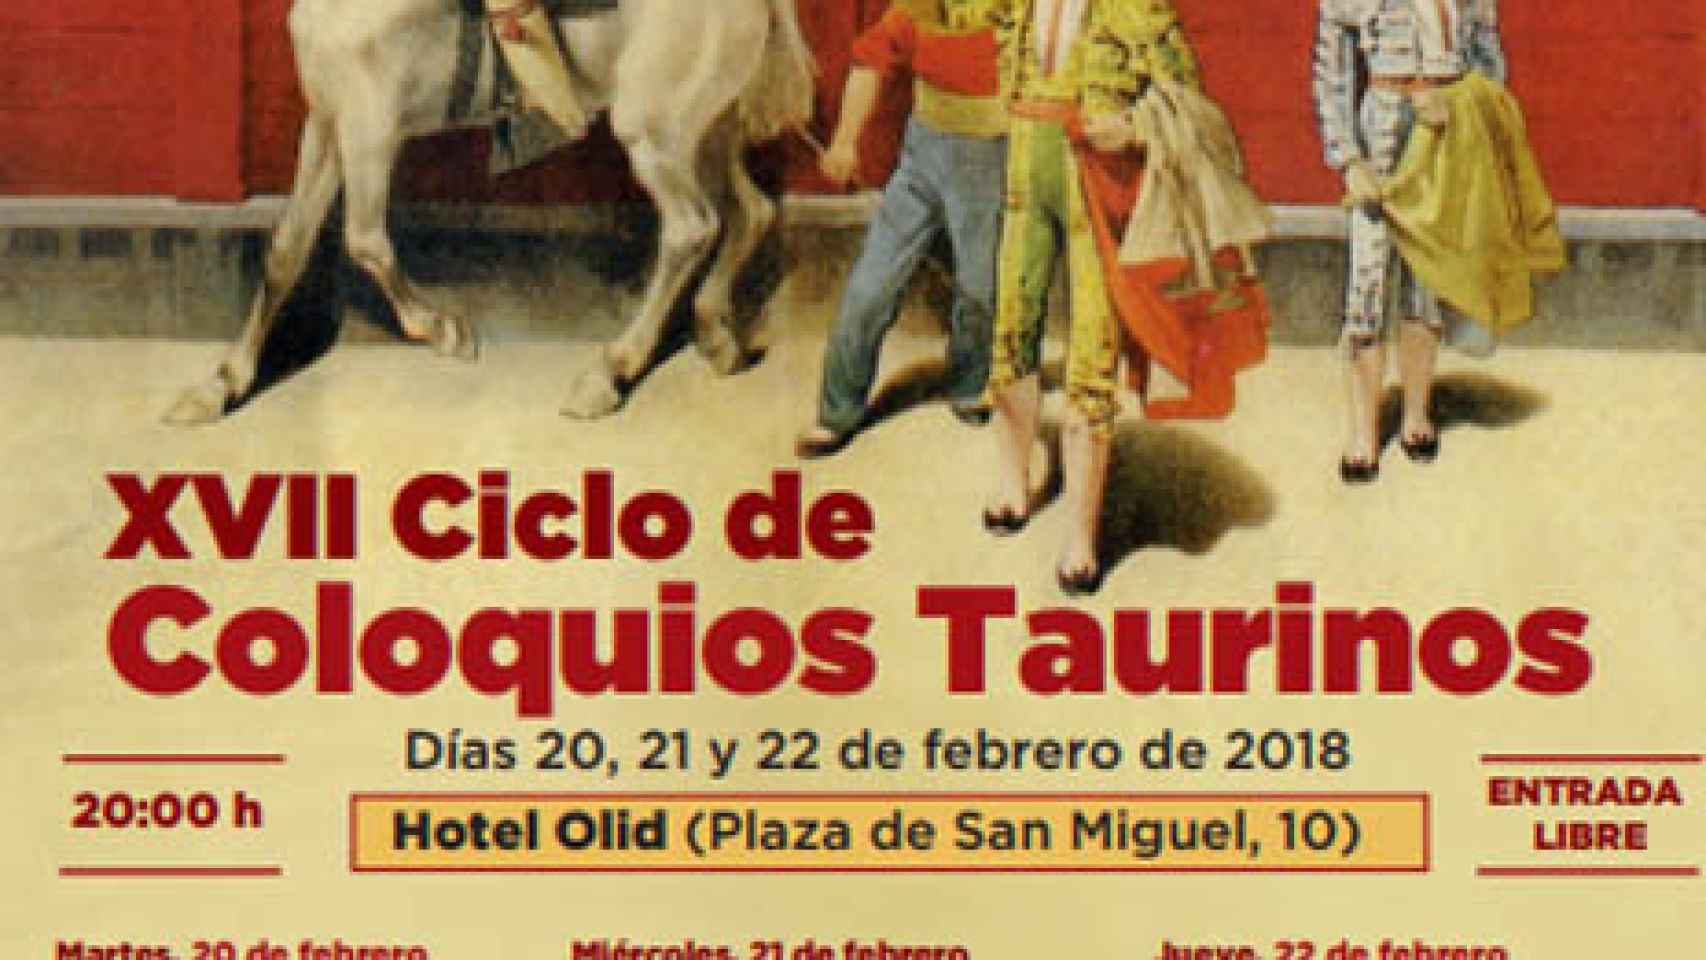 Valladolid-circulo-taurino-santos-coloquios